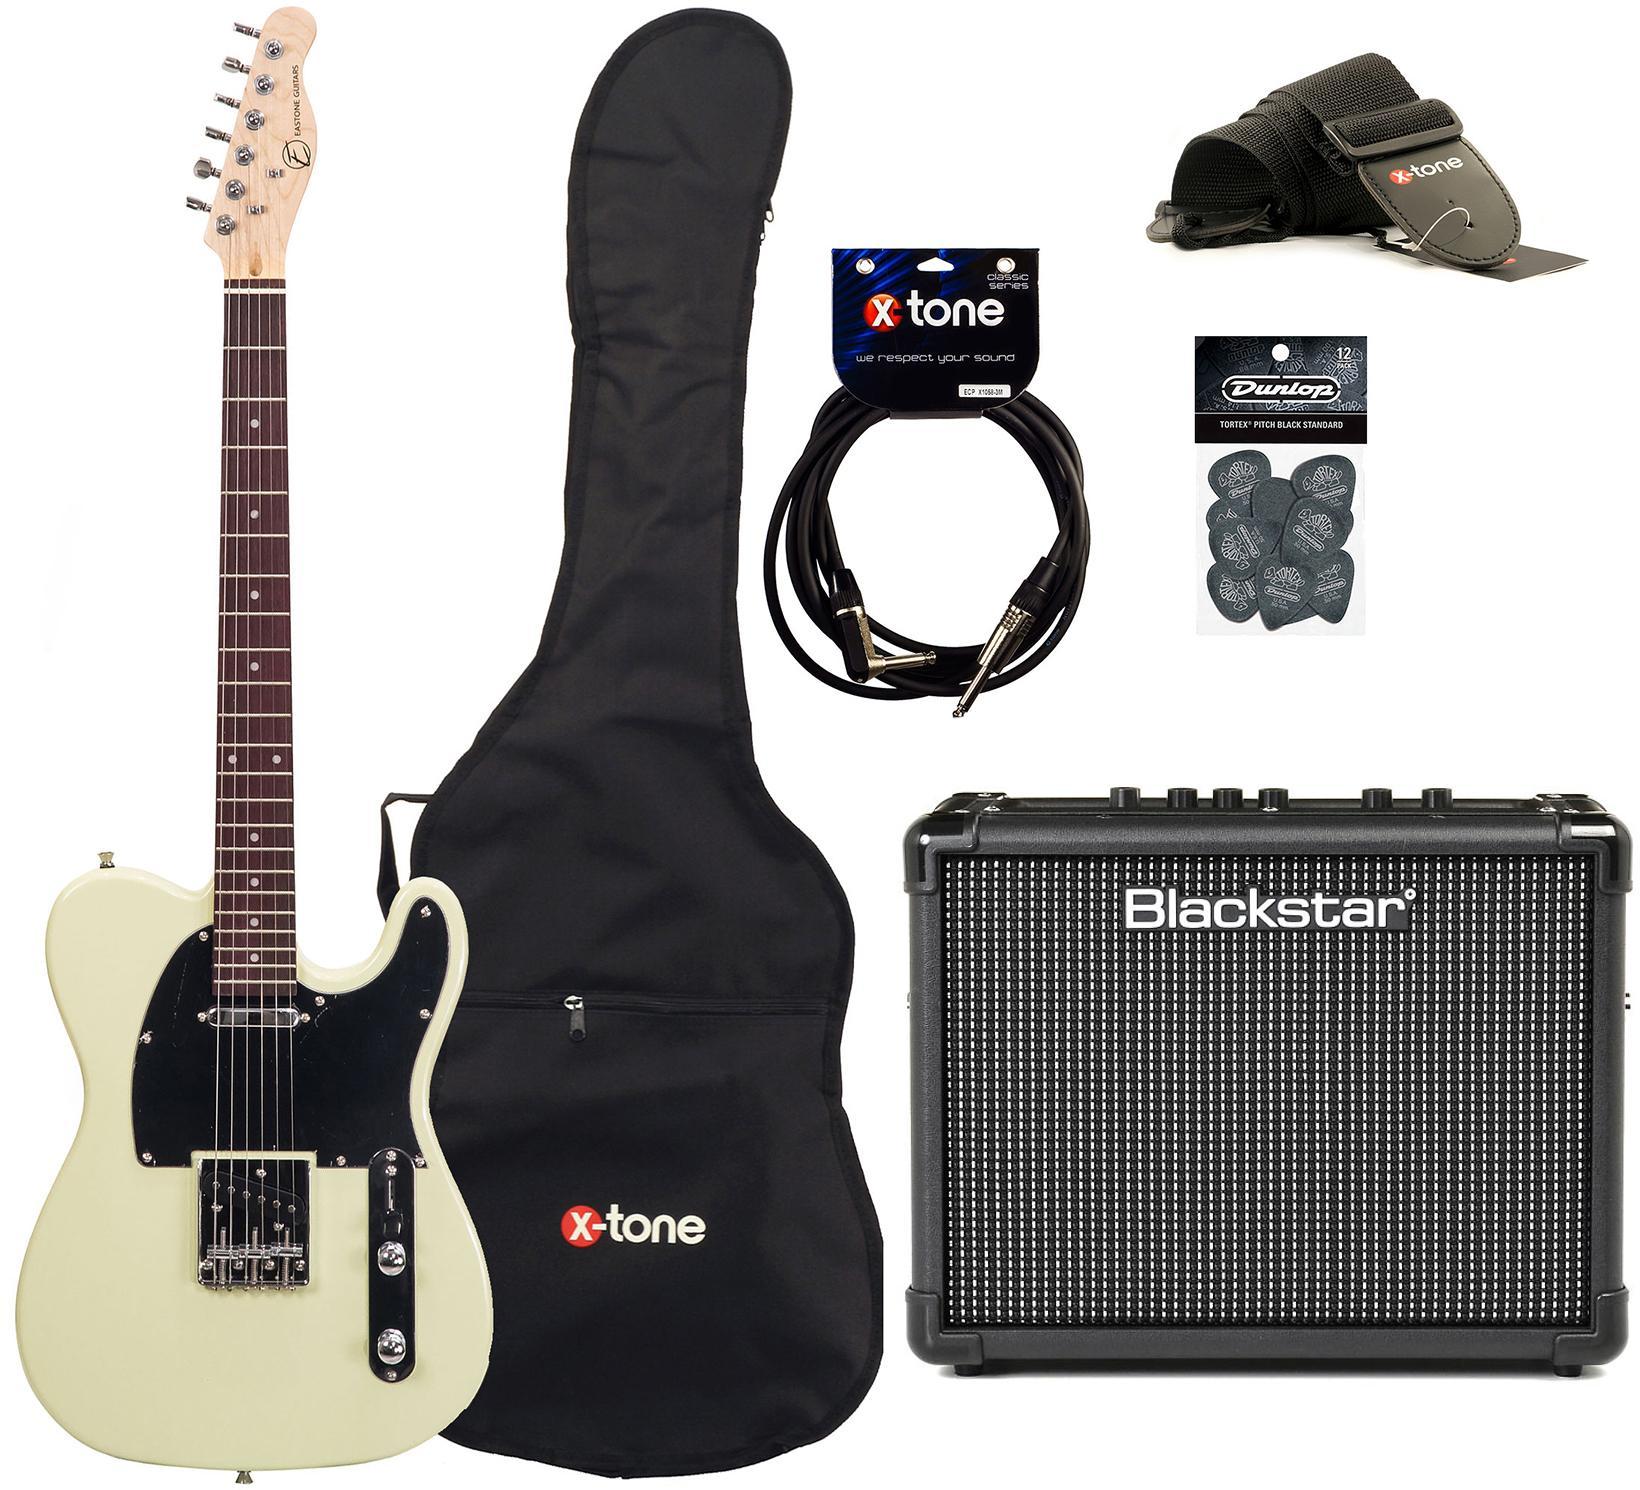 Pack guitare électrique Eastone TL70 +Blackstar Id Core 10 V3 +Accessoires - Black